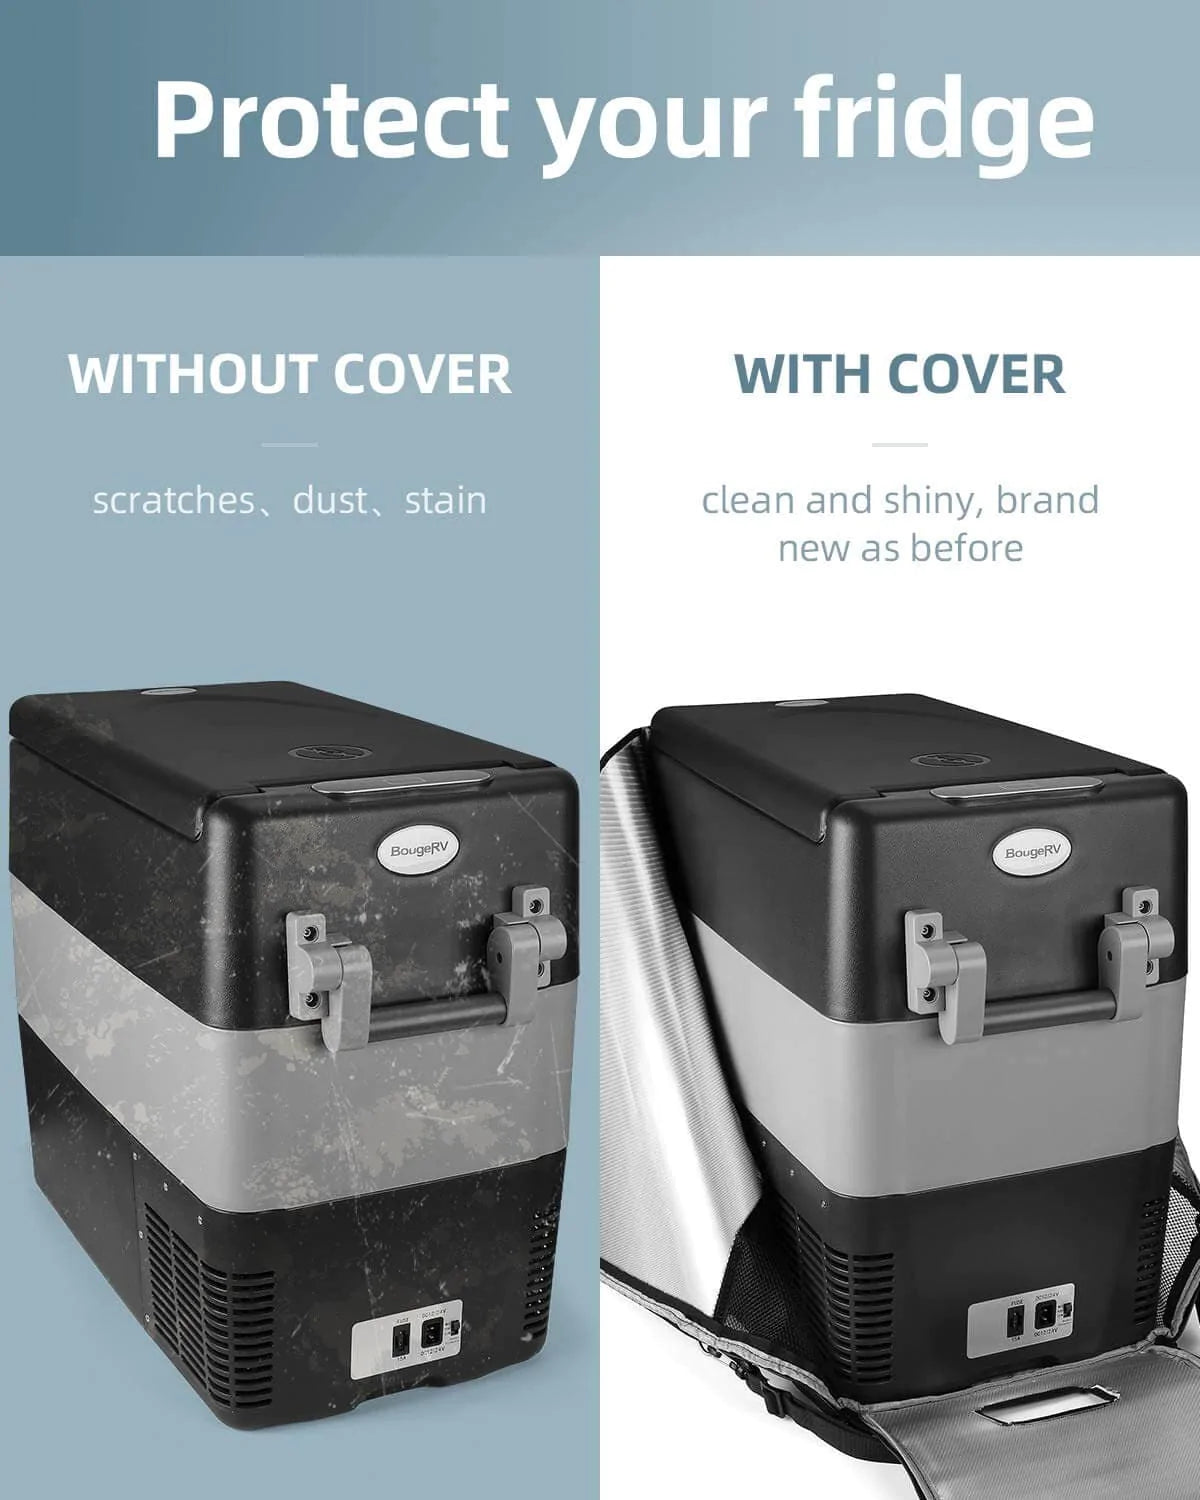 BougeRV 12V 53 Quart (50L) Portable Car Refrigerator Cover - Smart Nature Store